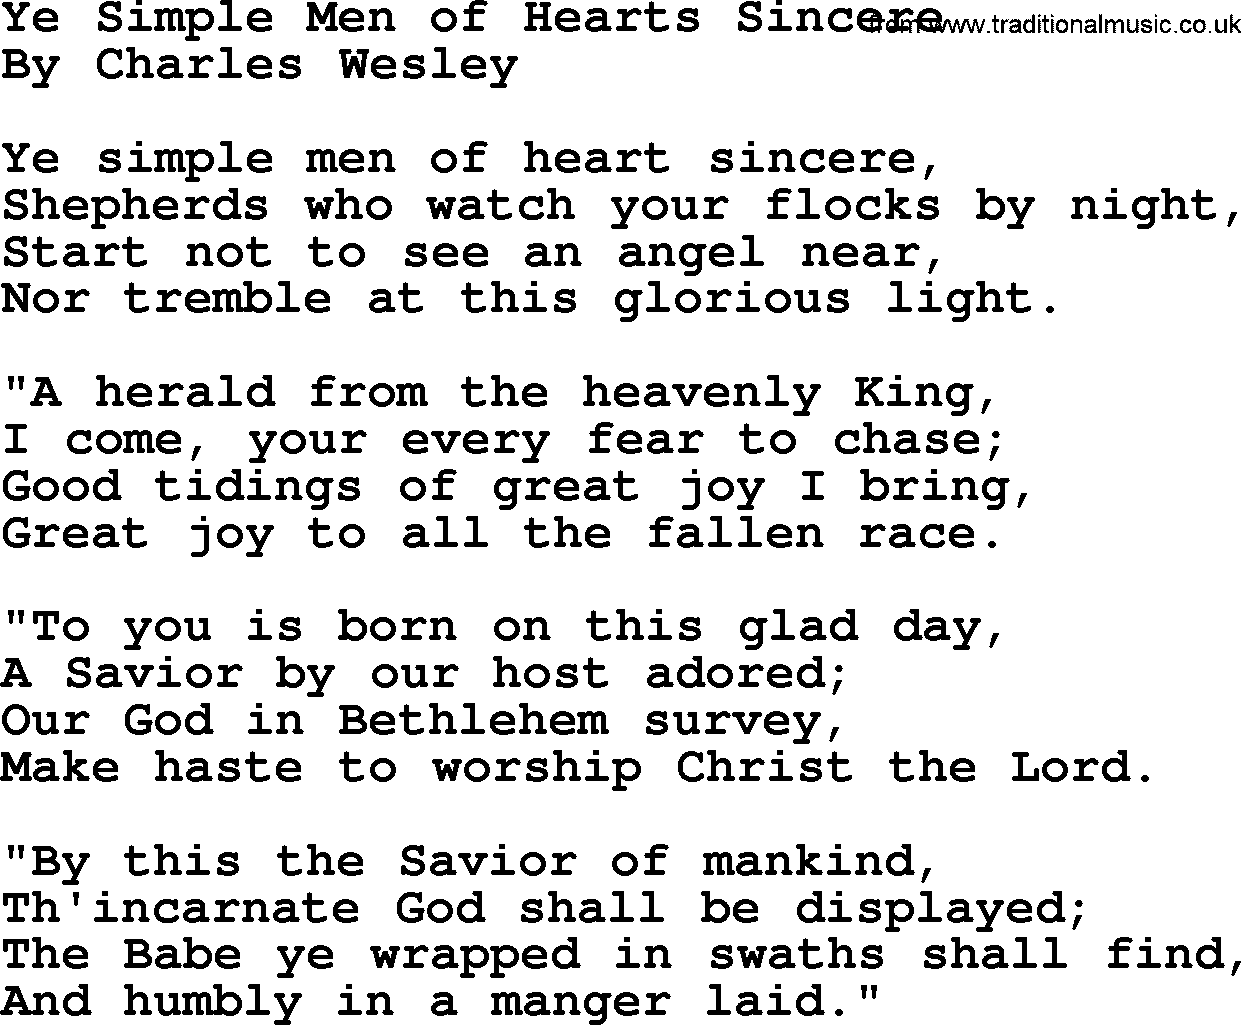 Charles Wesley hymn: Ye Simple Men of Hearts Sincere, lyrics